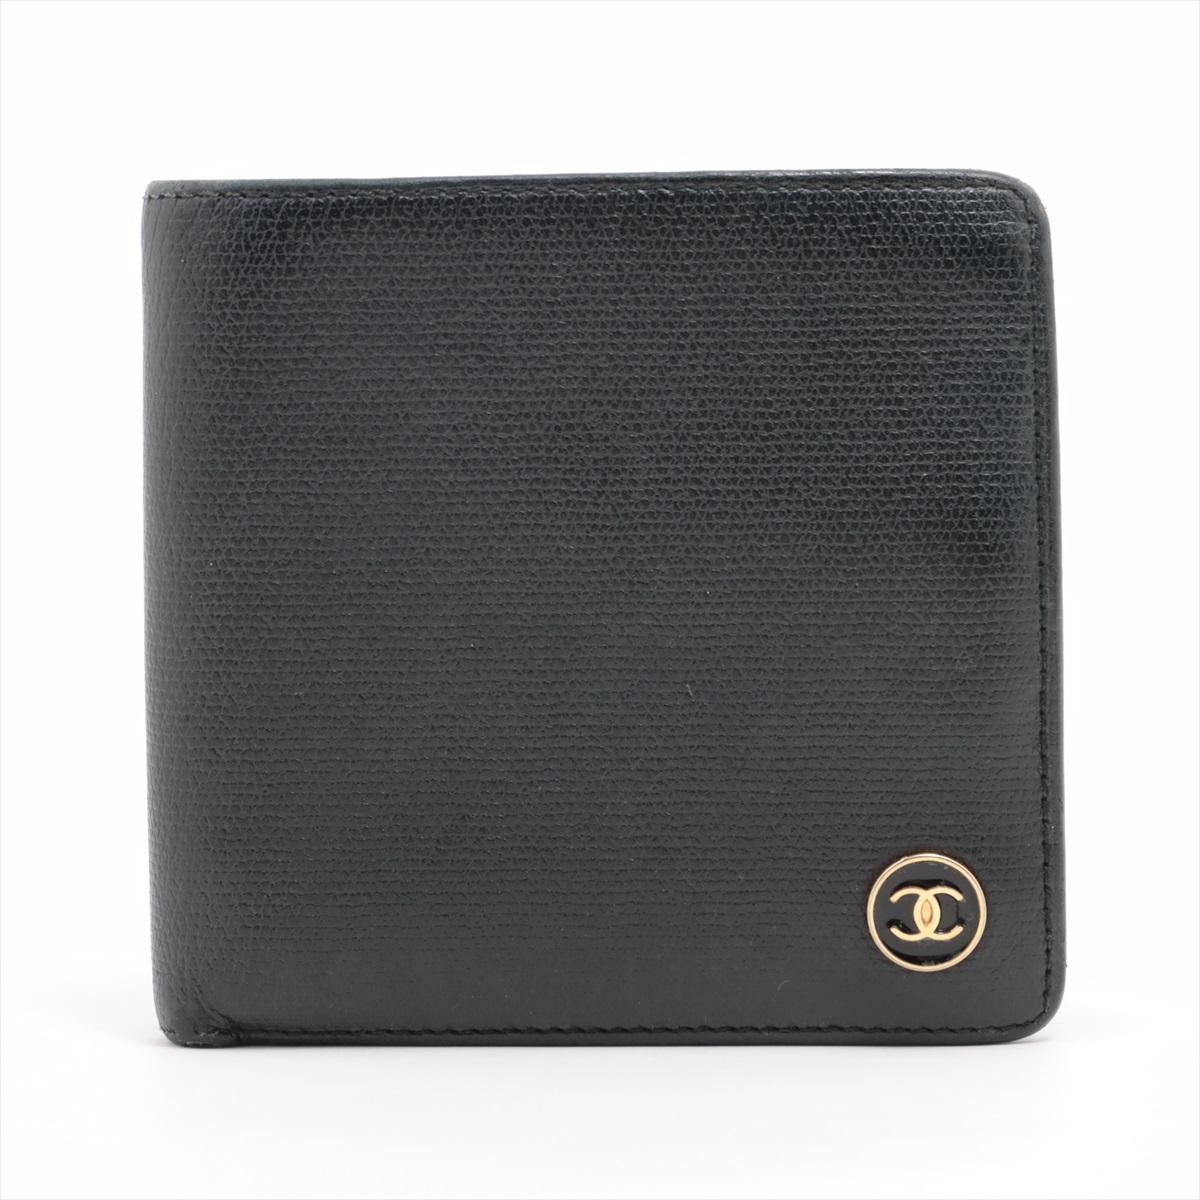 Die Chanel CC Logo Button Leather Bi-Fold Wallet in Schwarz ist ein raffiniertes und vielseitiges Accessoire, das zeitlose Eleganz ausstrahlt. Das aus luxuriösem Leder gefertigte Portemonnaie verfügt über den ikonischen Chanel CC-Logo-Knopf, der dem